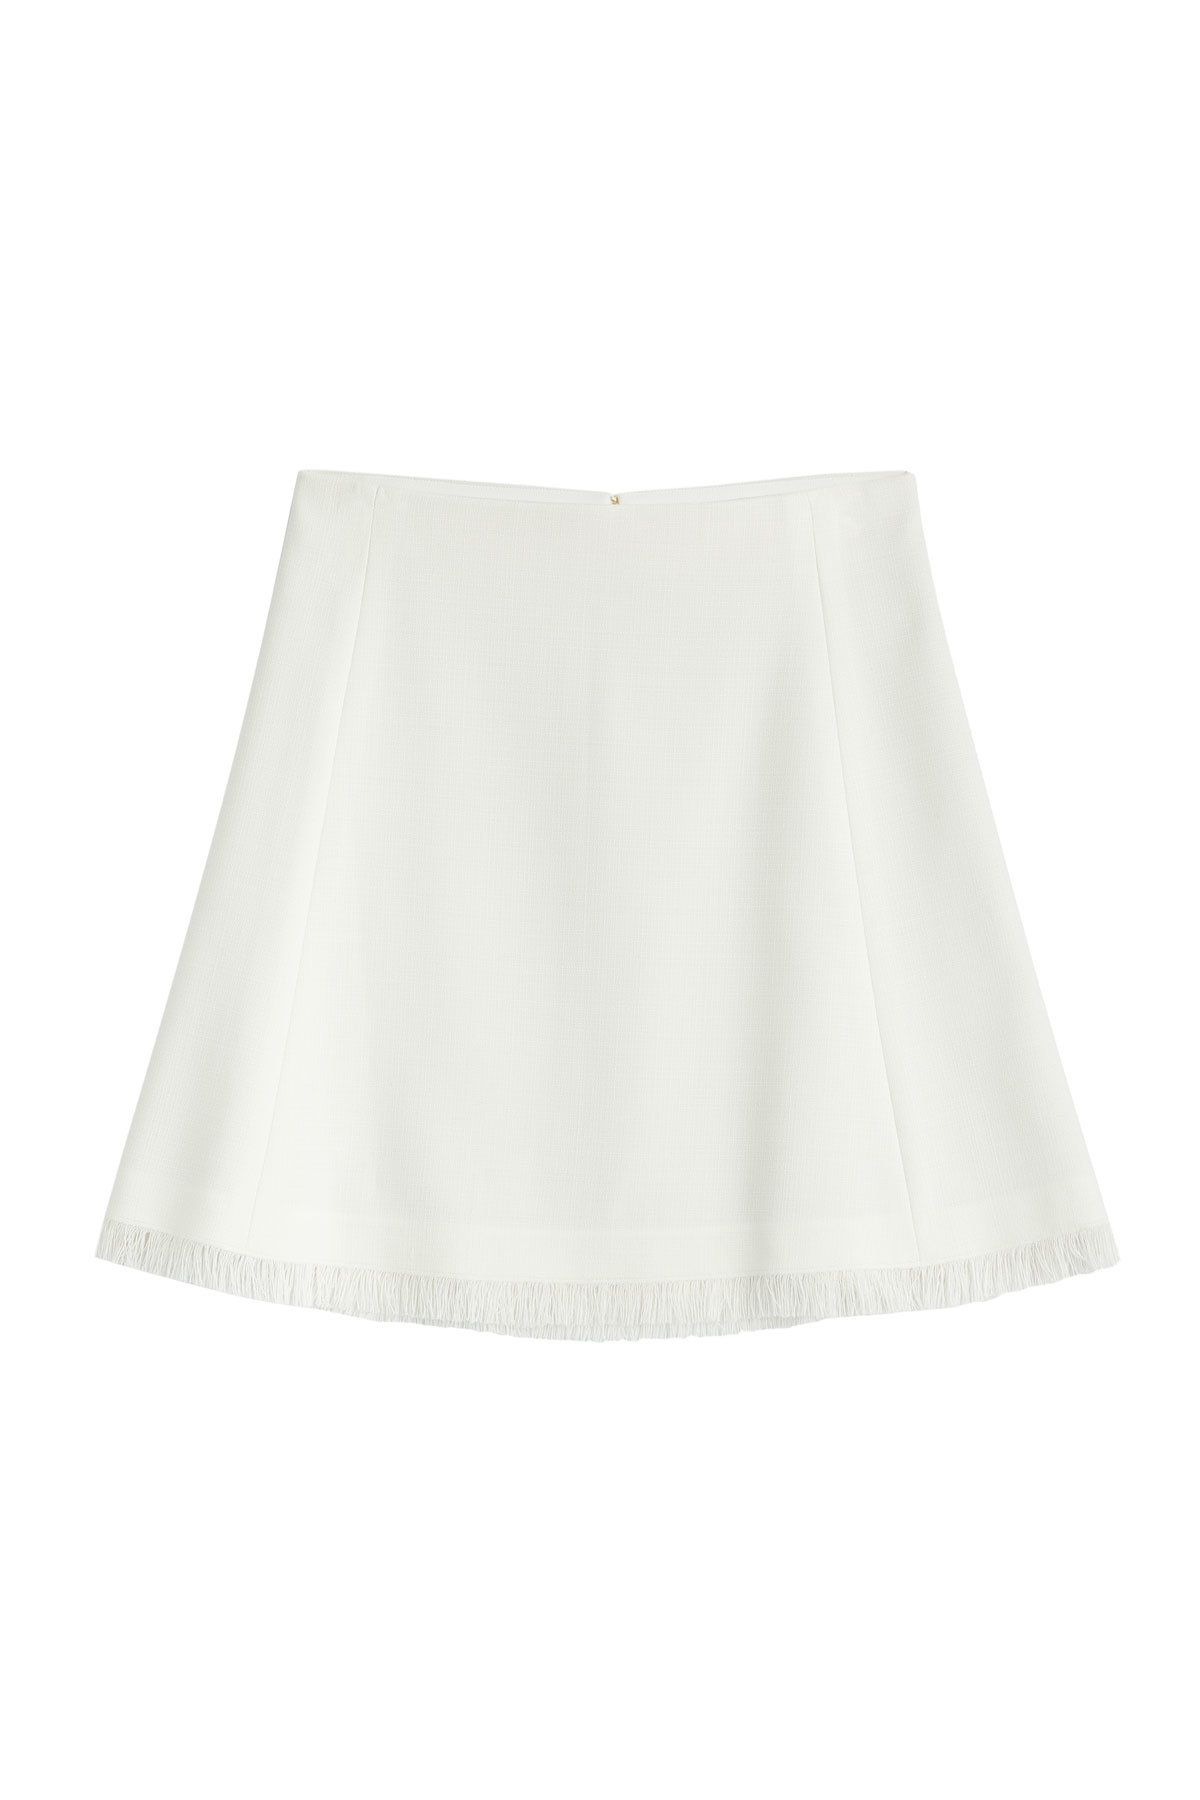 Chloe - Wool Blend Skirt with Fringe